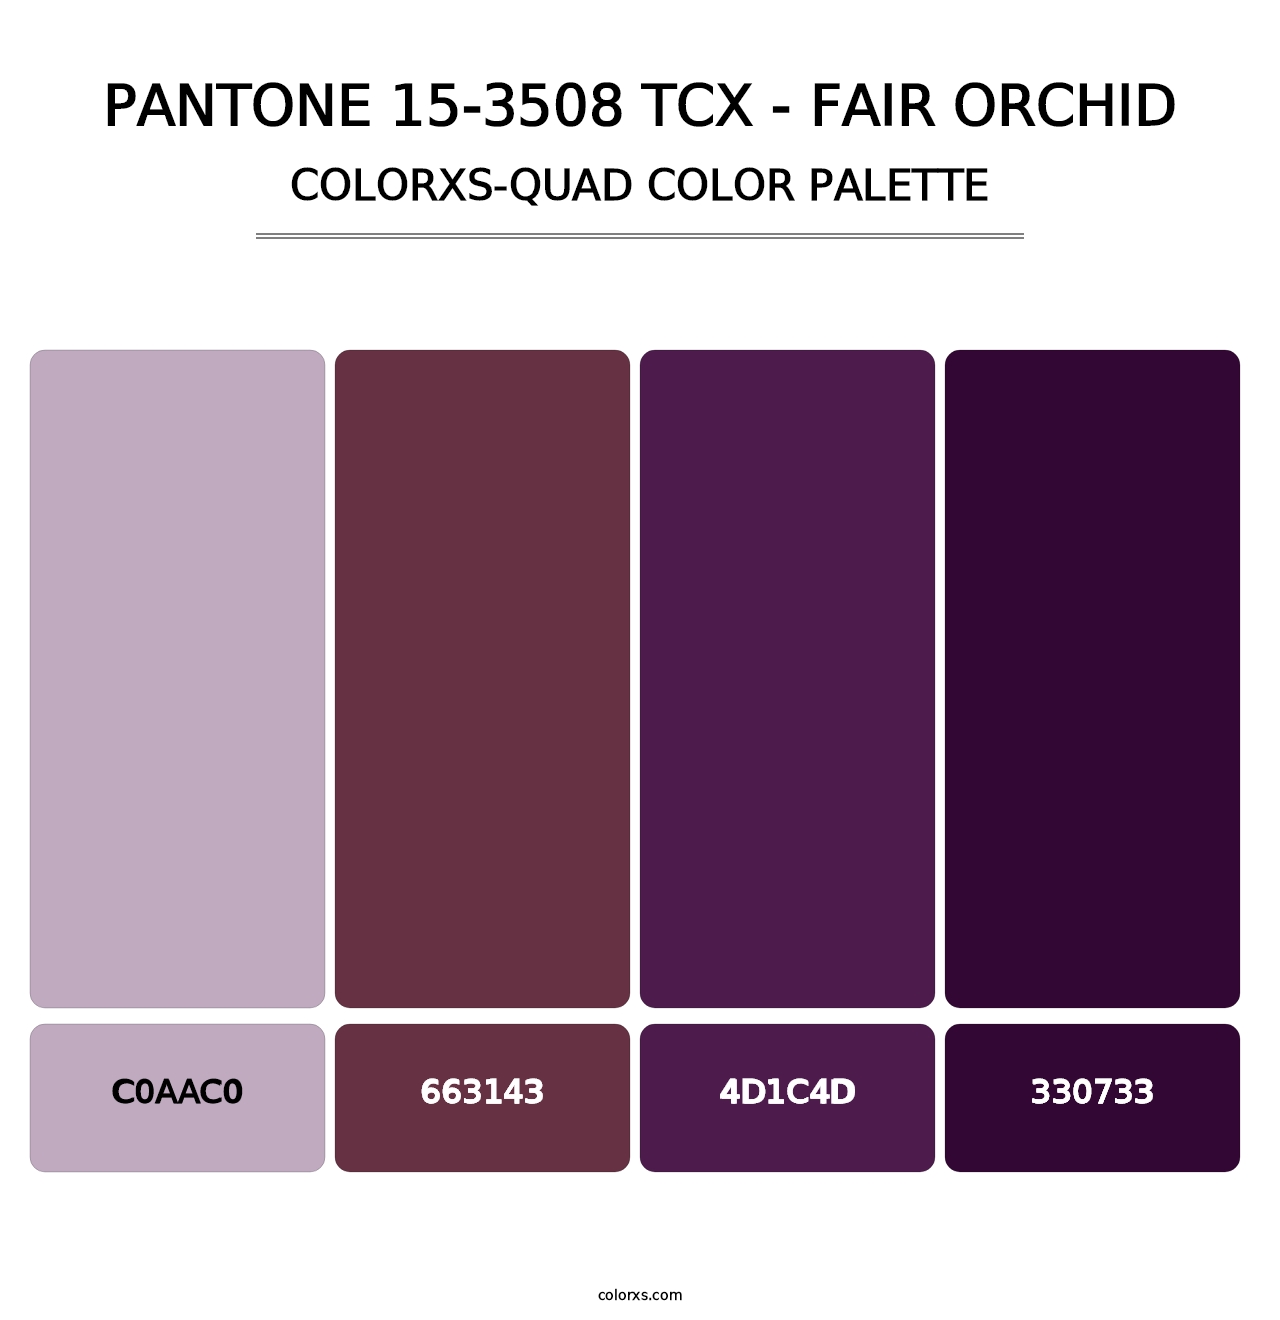 PANTONE 15-3508 TCX - Fair Orchid - Colorxs Quad Palette